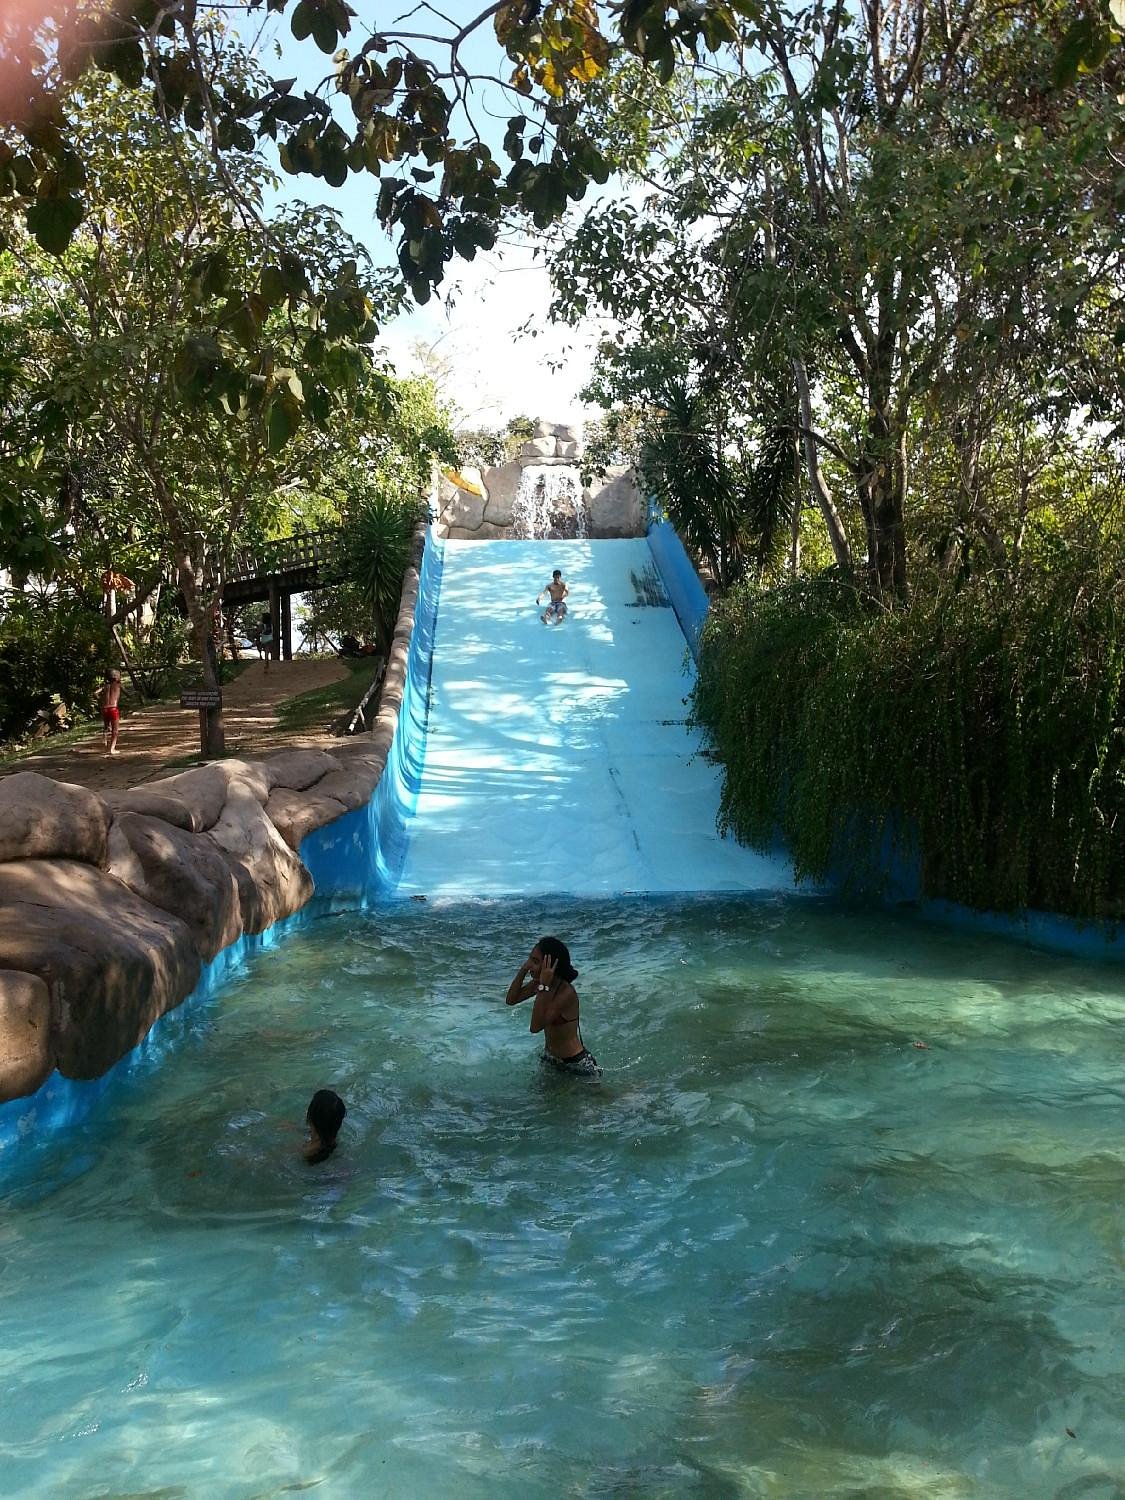 Em Barra do Garças, Parque Águas Quentes funcionará todos os dias até o dia  22 de janeiro